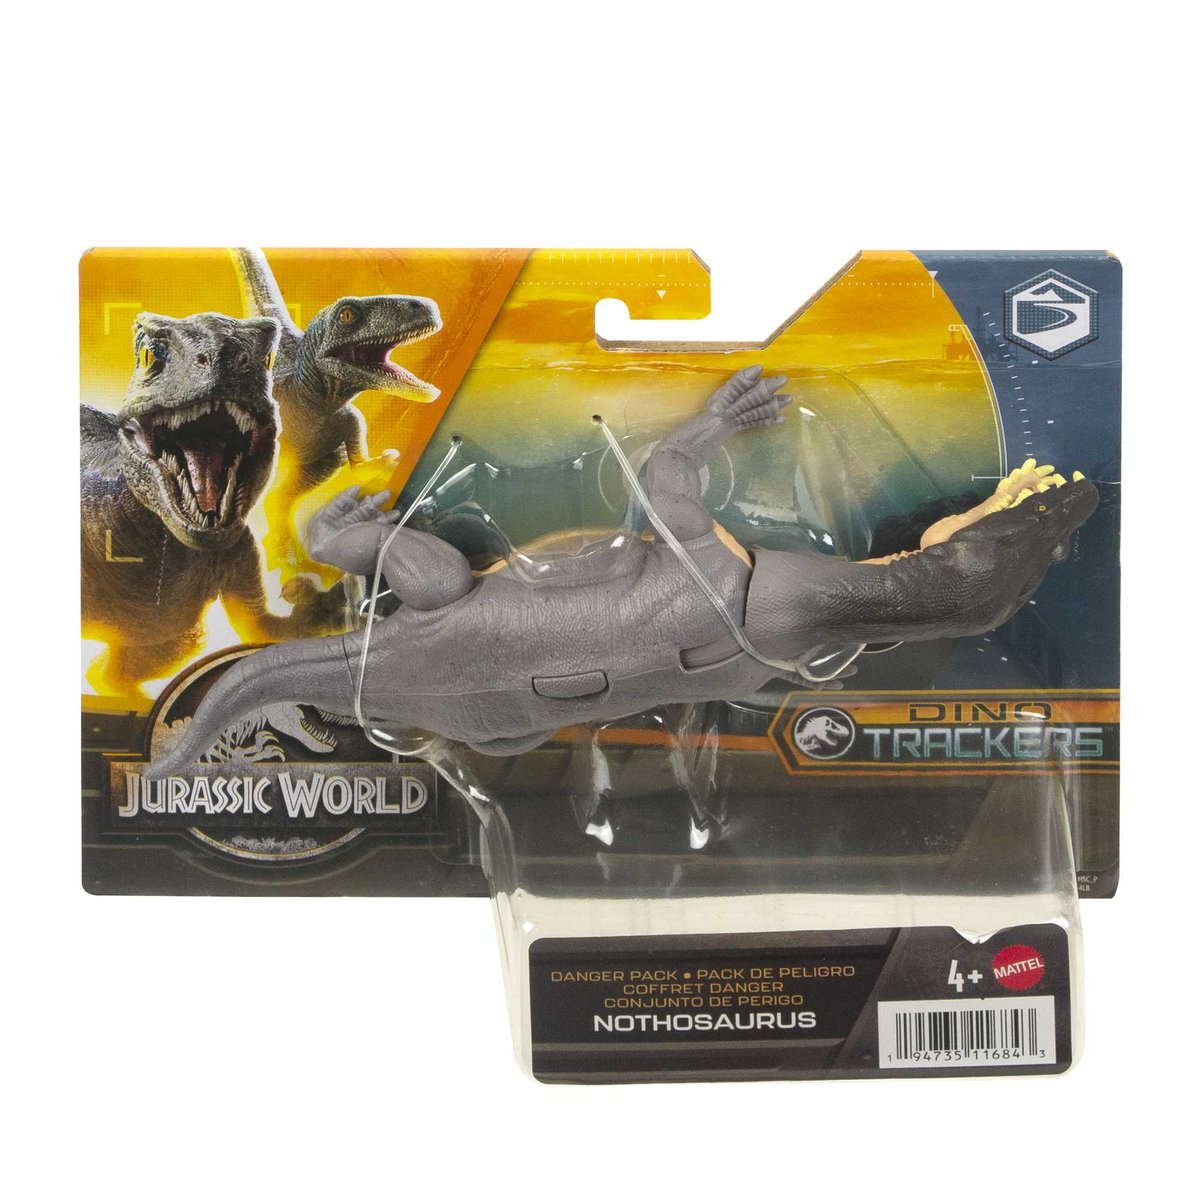 Zdjęcia - Figurka / zabawka transformująca Mattel Jurassic World, dinozaur, Nothosaurus, HLN53 